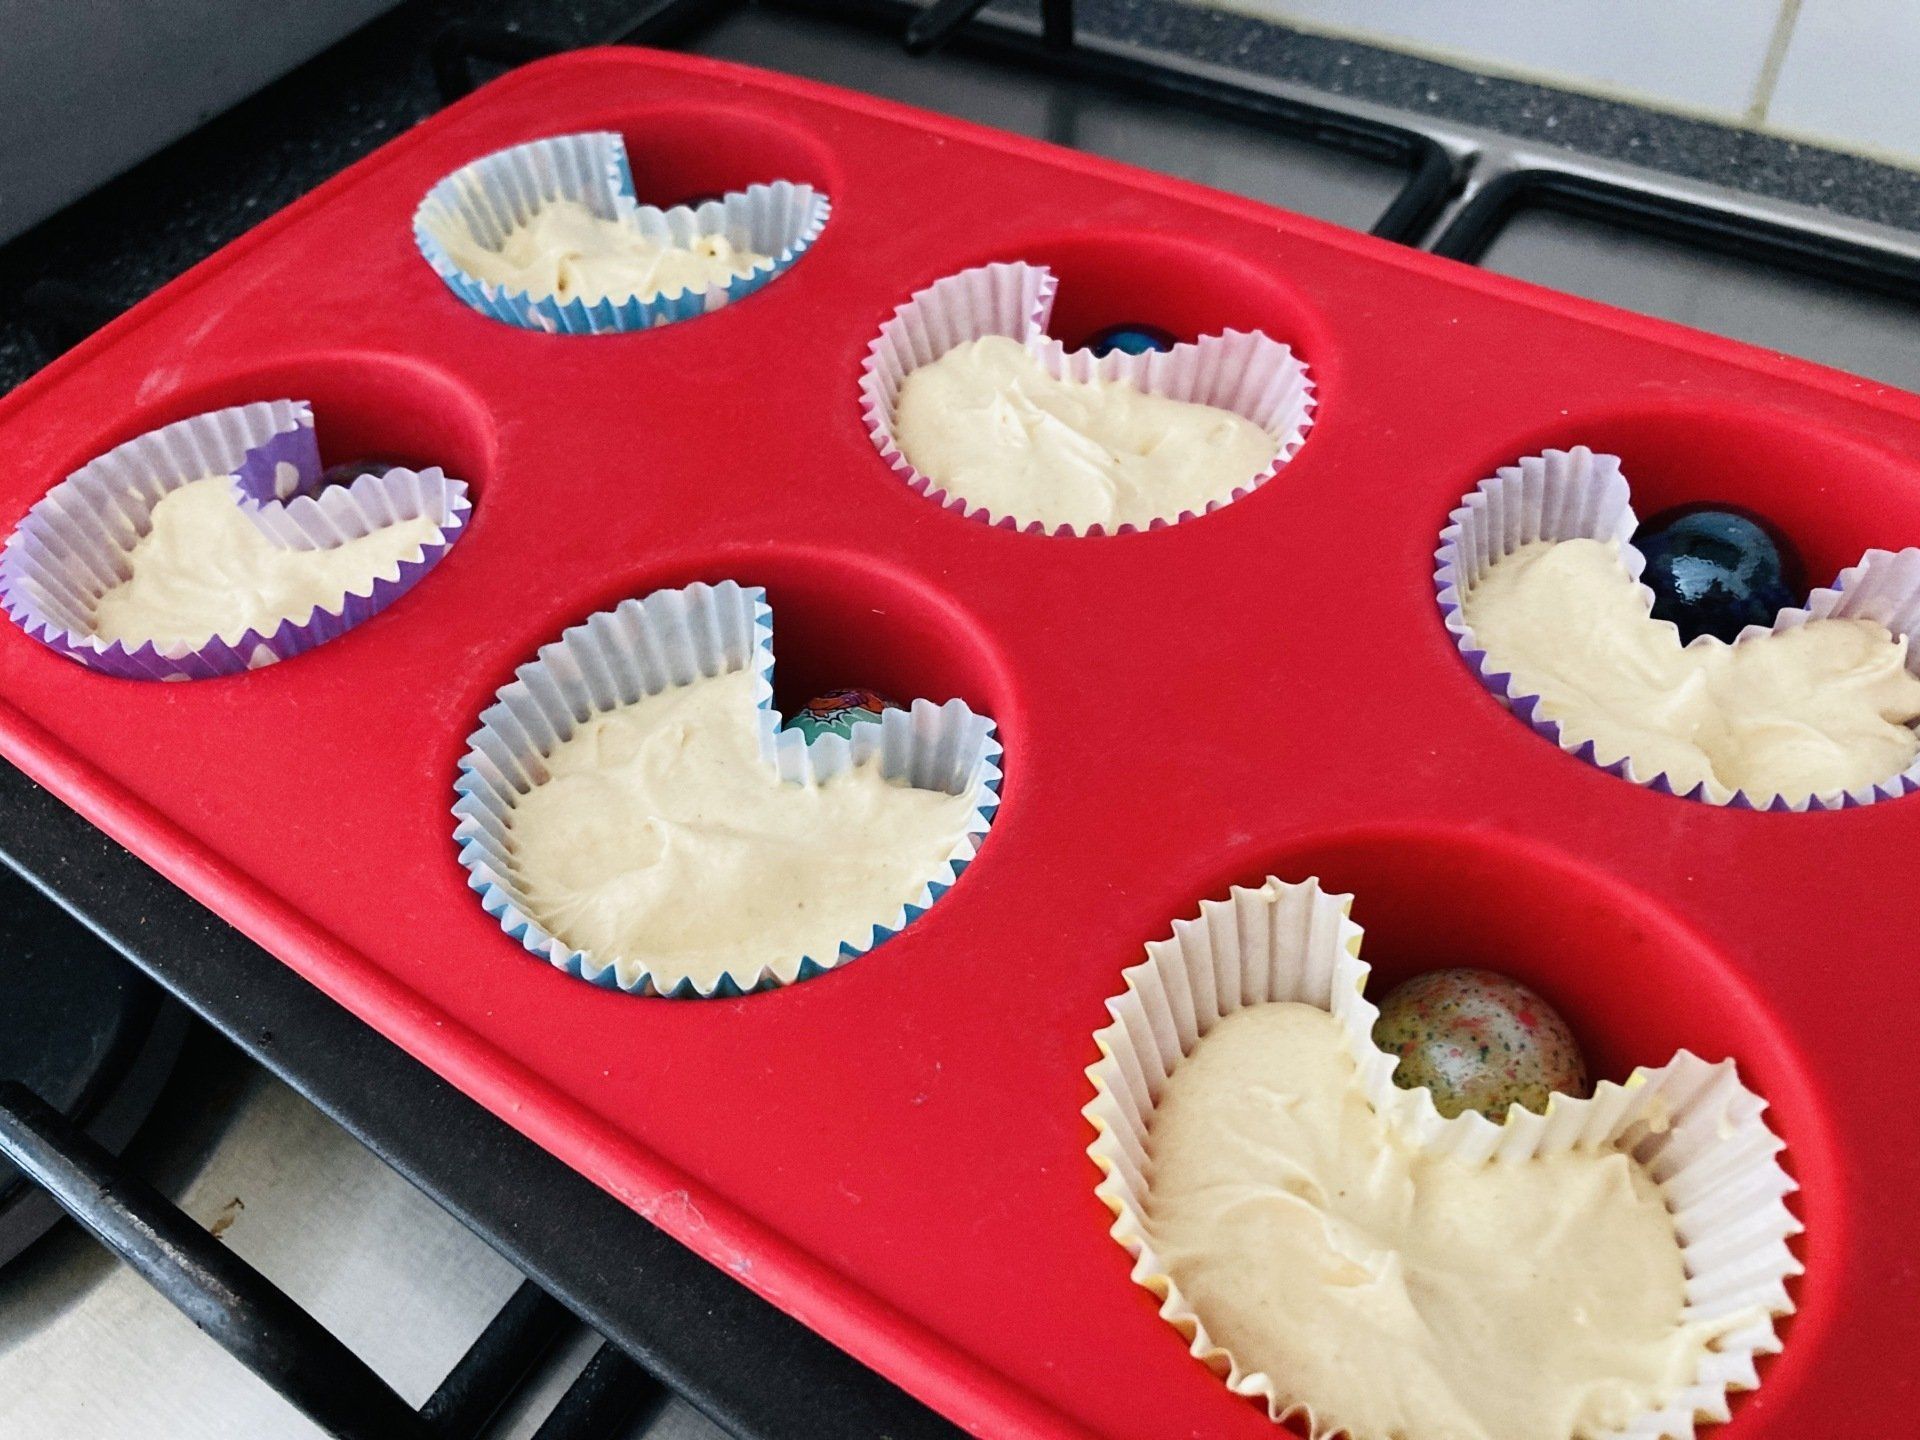 Recept; Vanille cupcakes in de vorm van een hartje ❤️